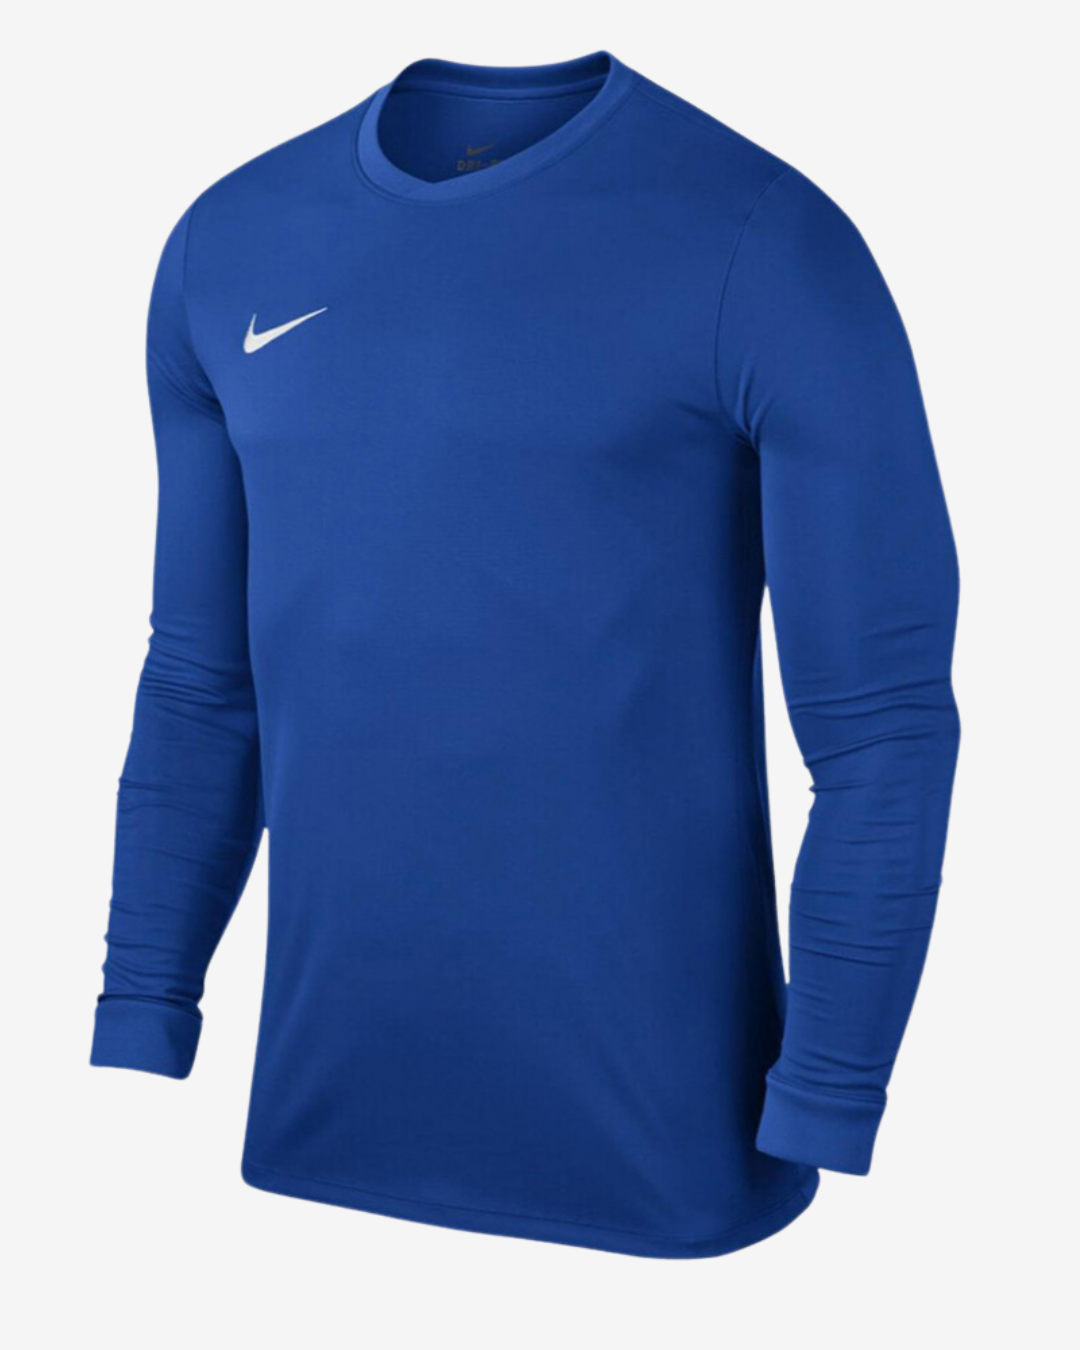 Billede af Nike Dri-fit park 7 langærmet t-shirt - Blå - Str. L - Modish.dk